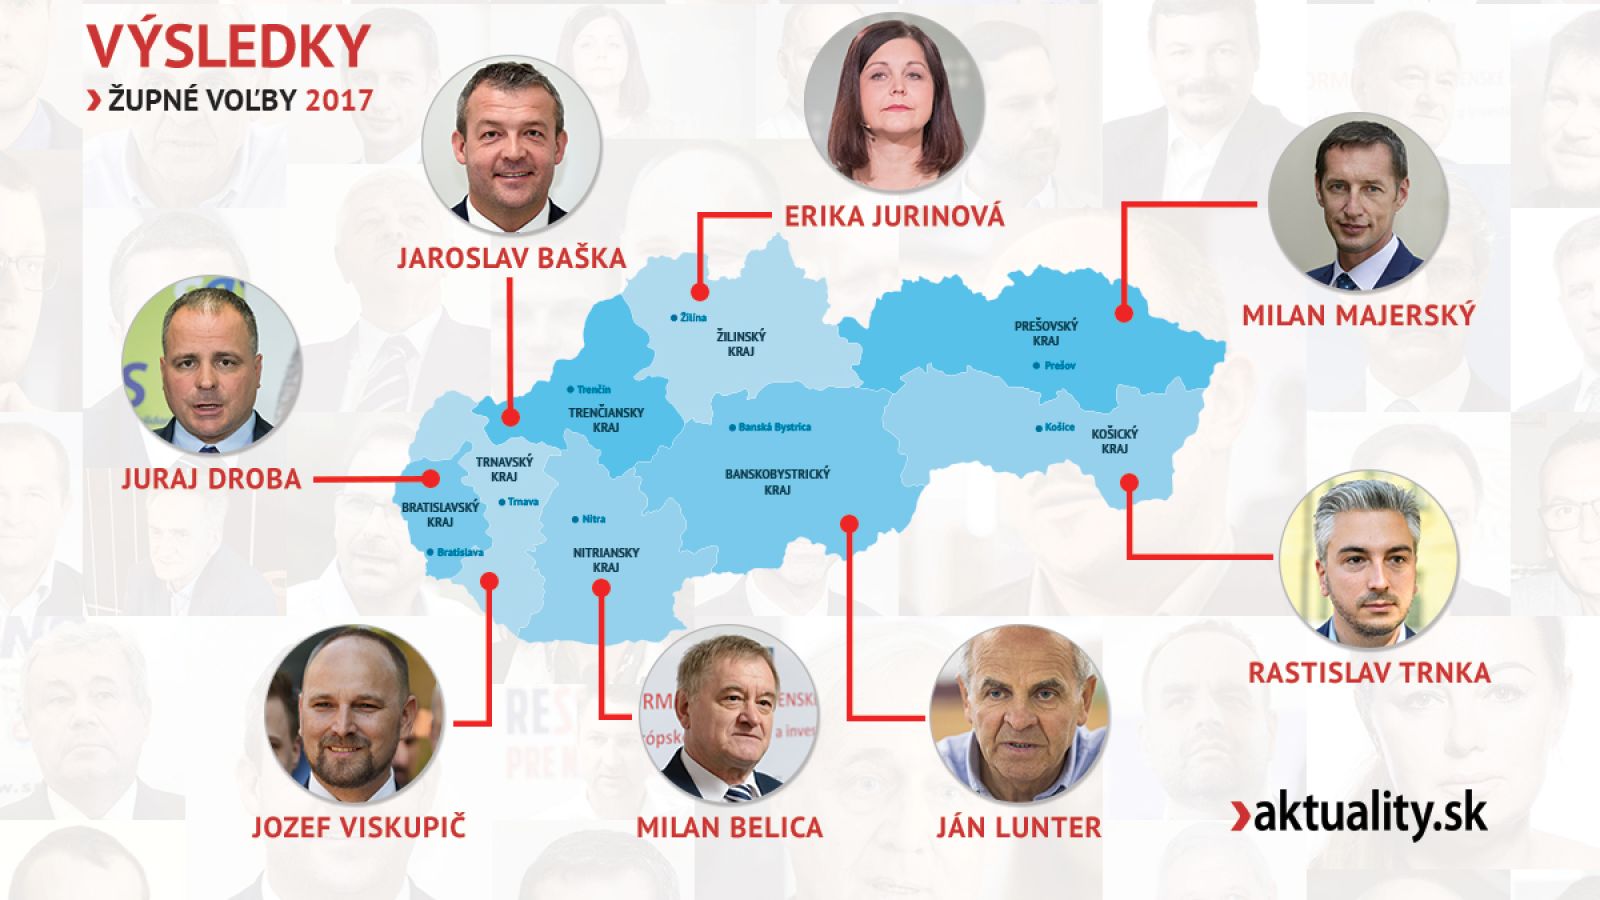 župné voľby 2017, výsledky, zdroj aktuality.sk